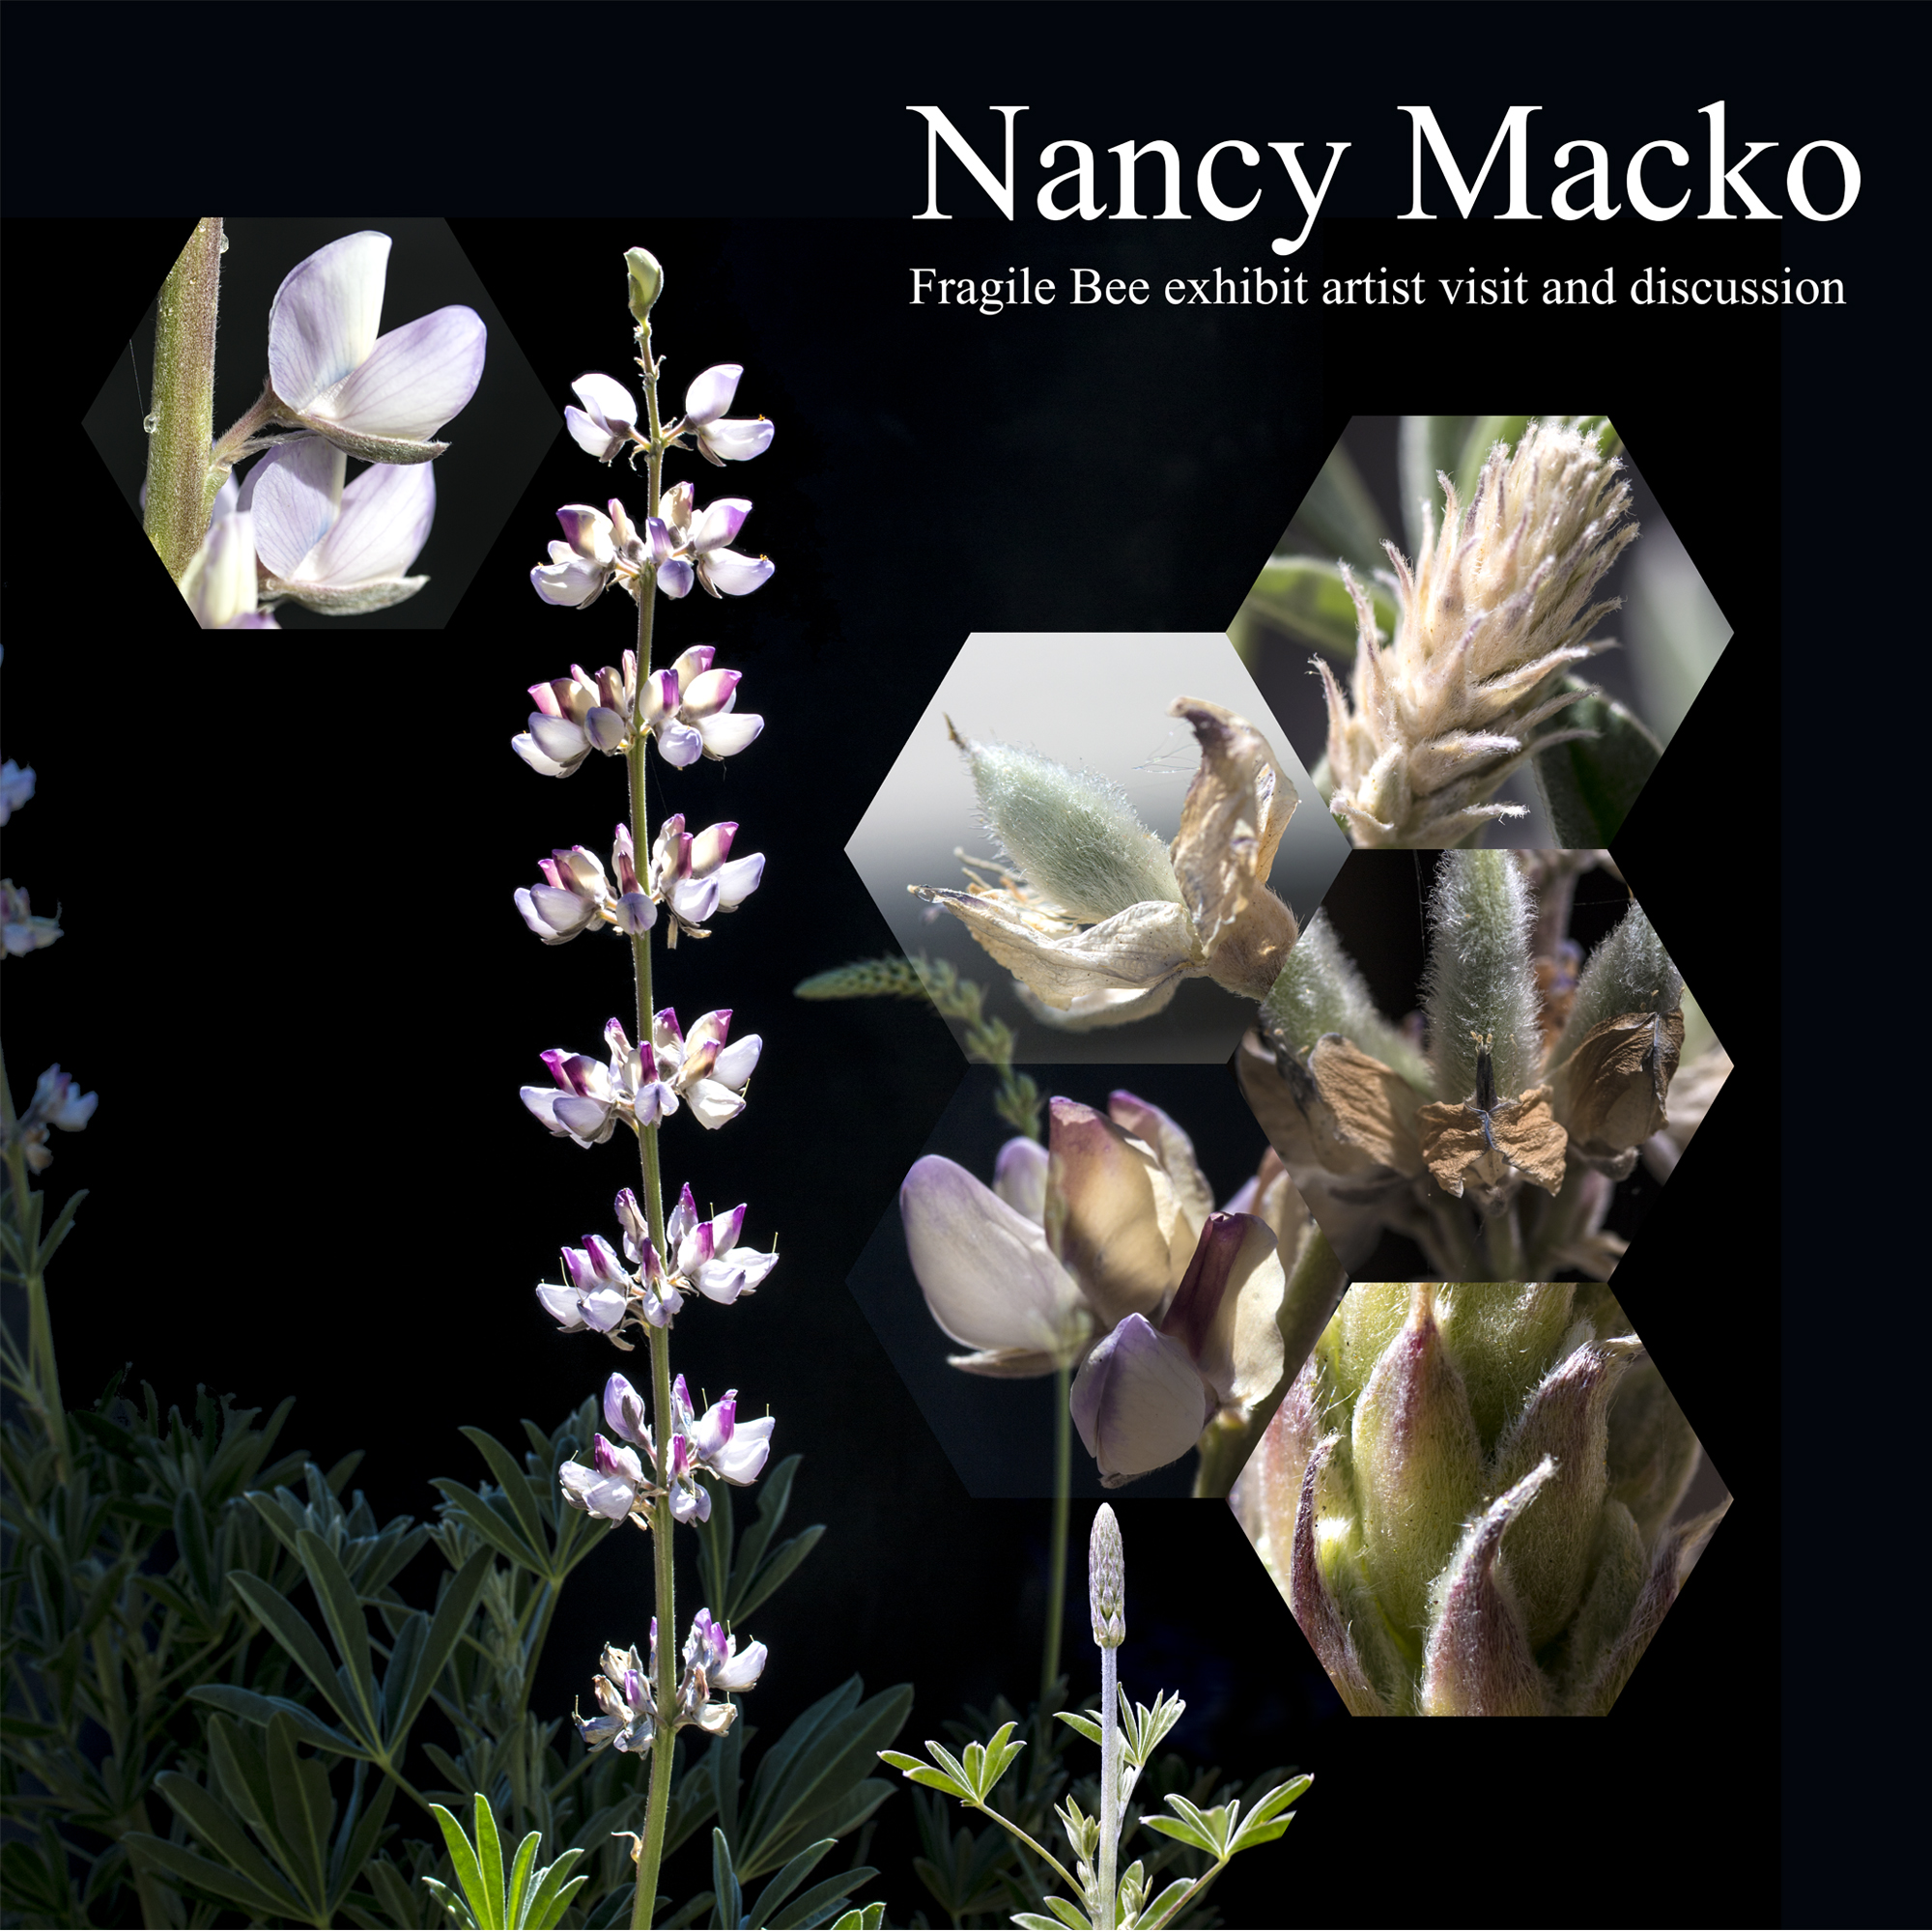 Nancy Macko